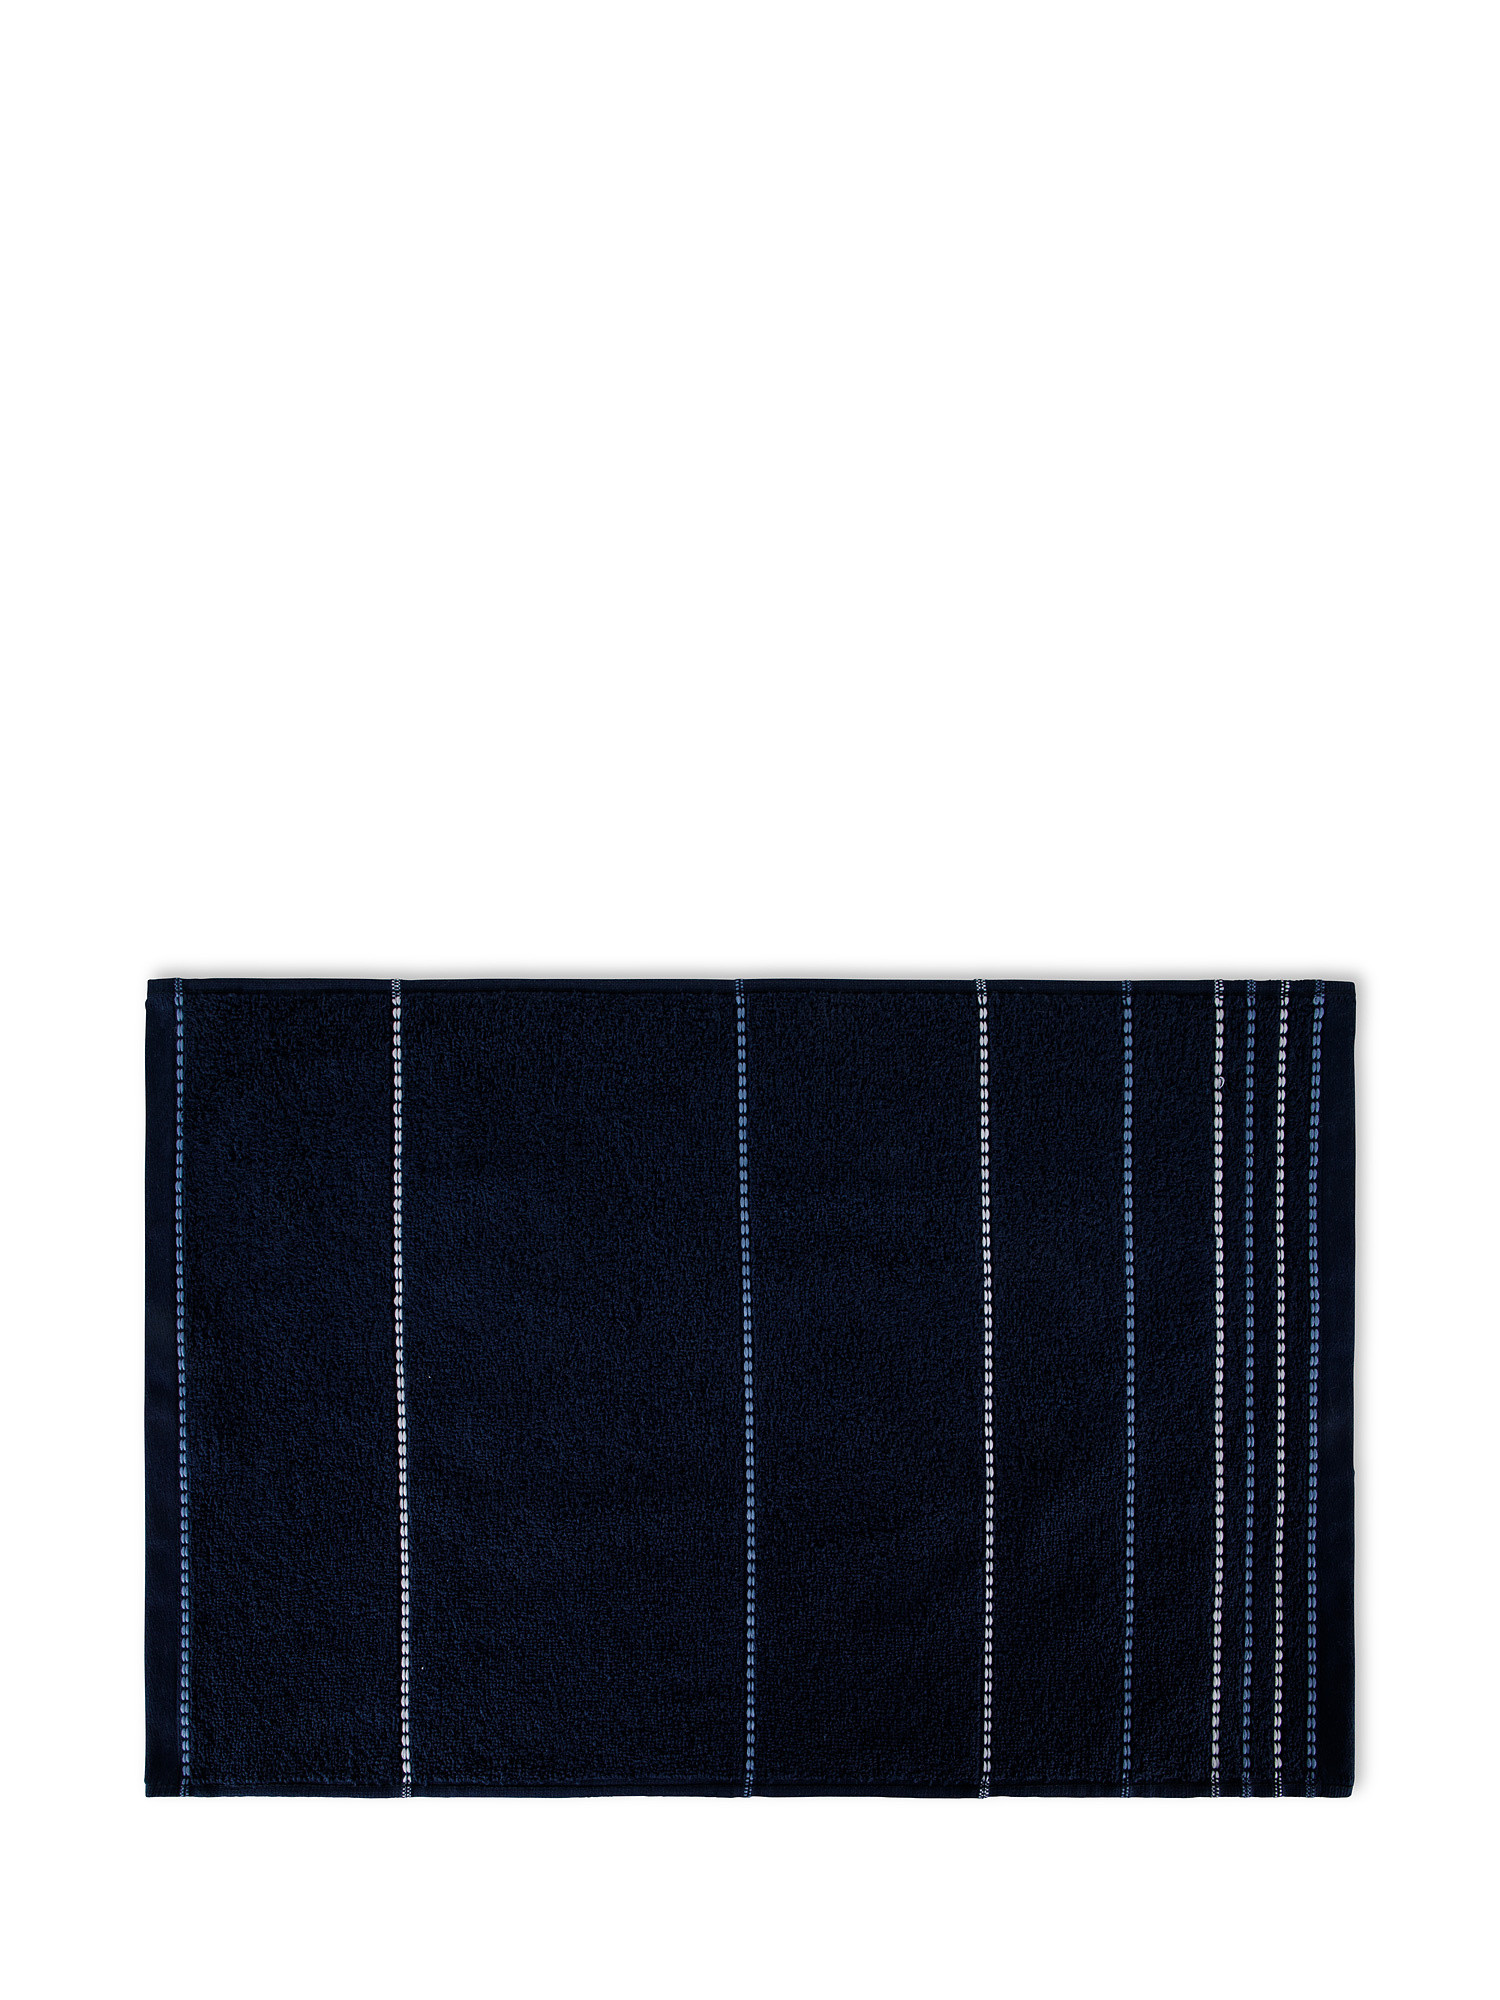 Set 3 asciugamani spugna di cotone a righe, Blu, large